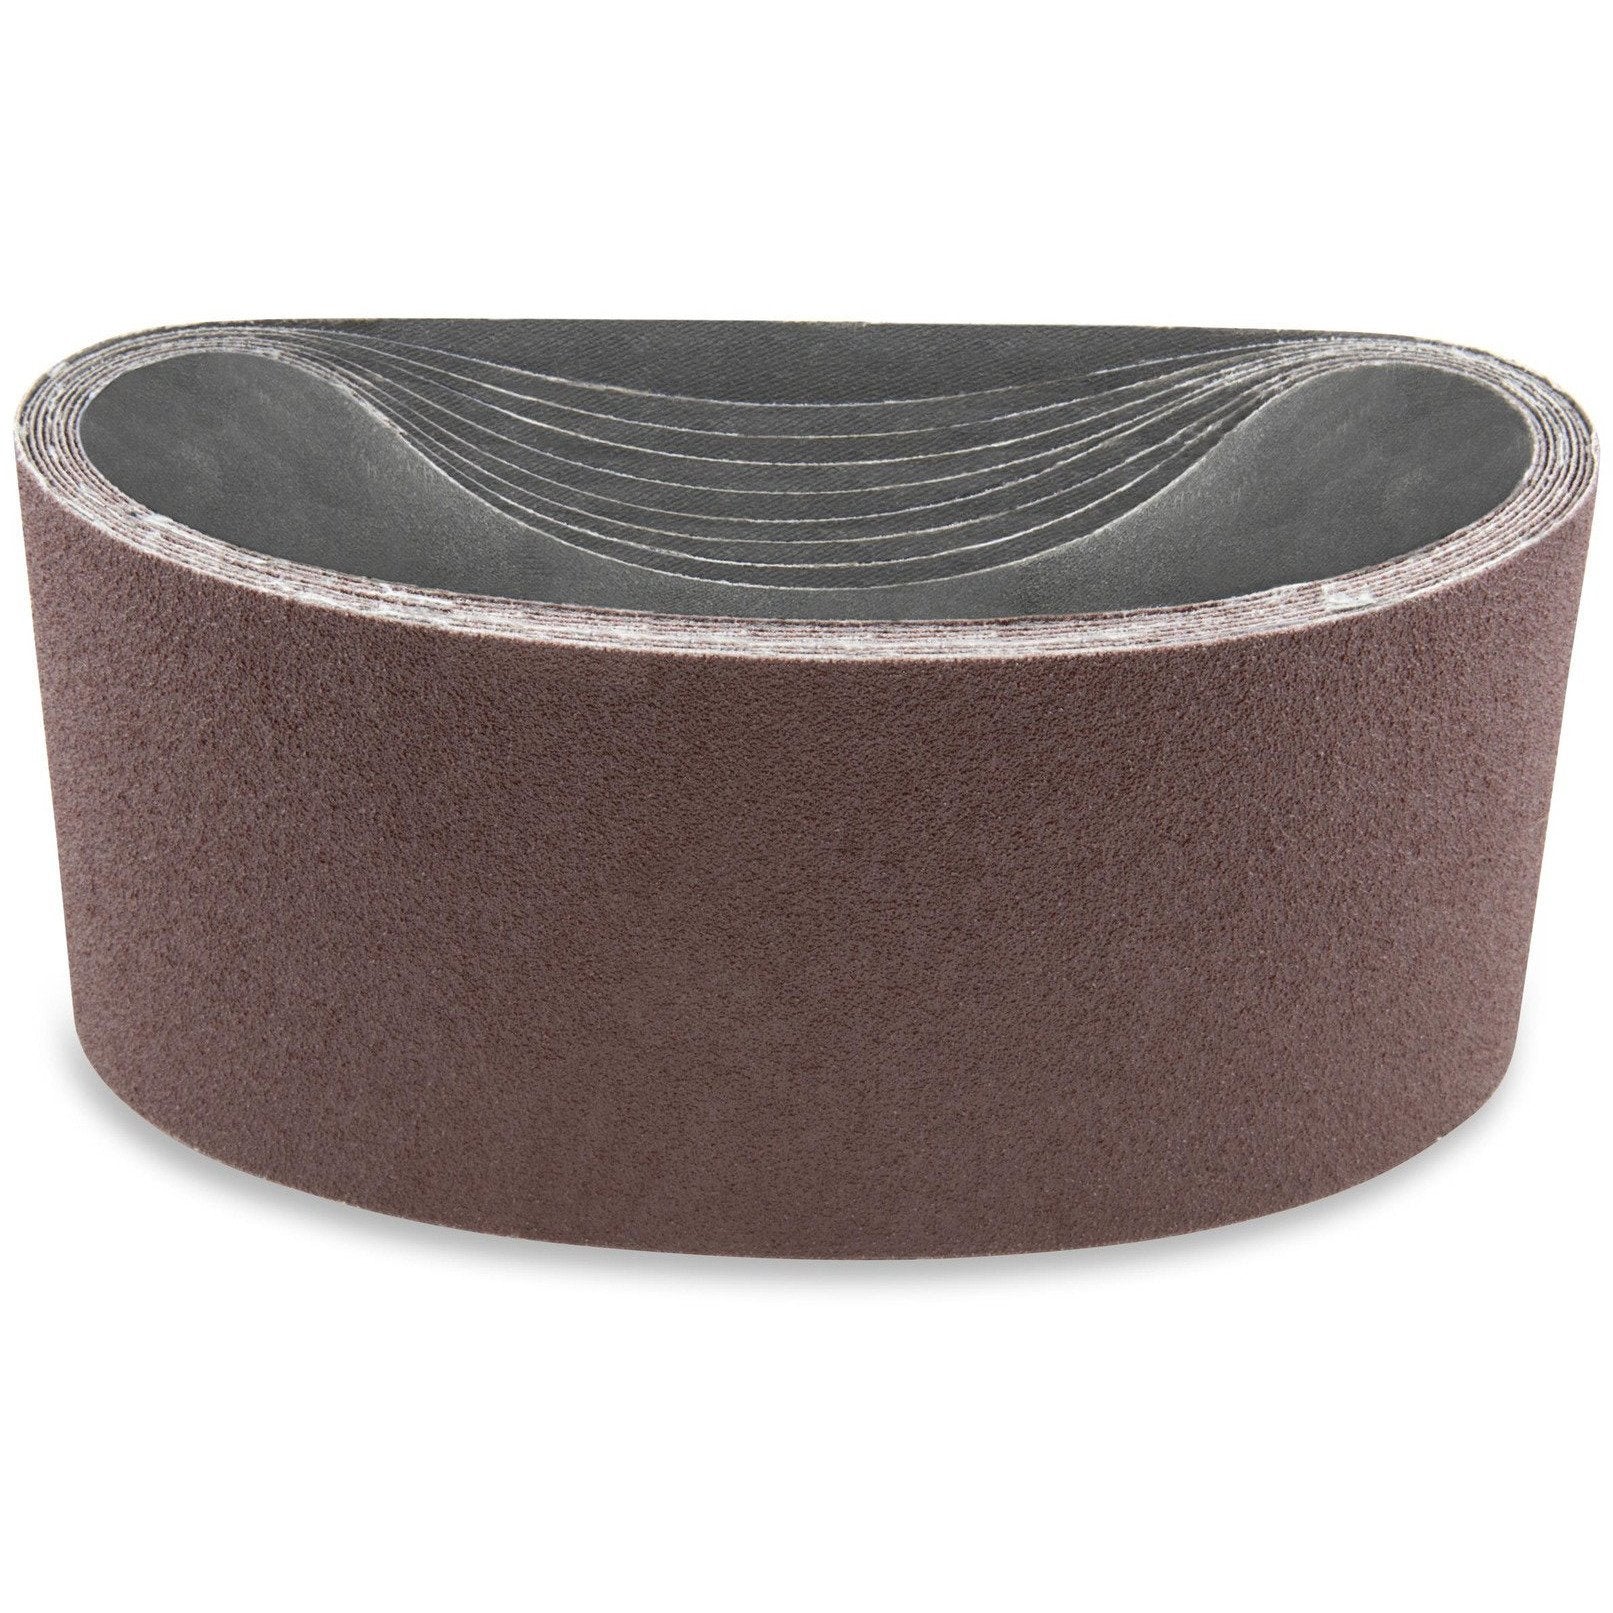 4 X 168 Inch Aluminum Oxide Sanding Belts, 3 Pack - Red Label Abrasives